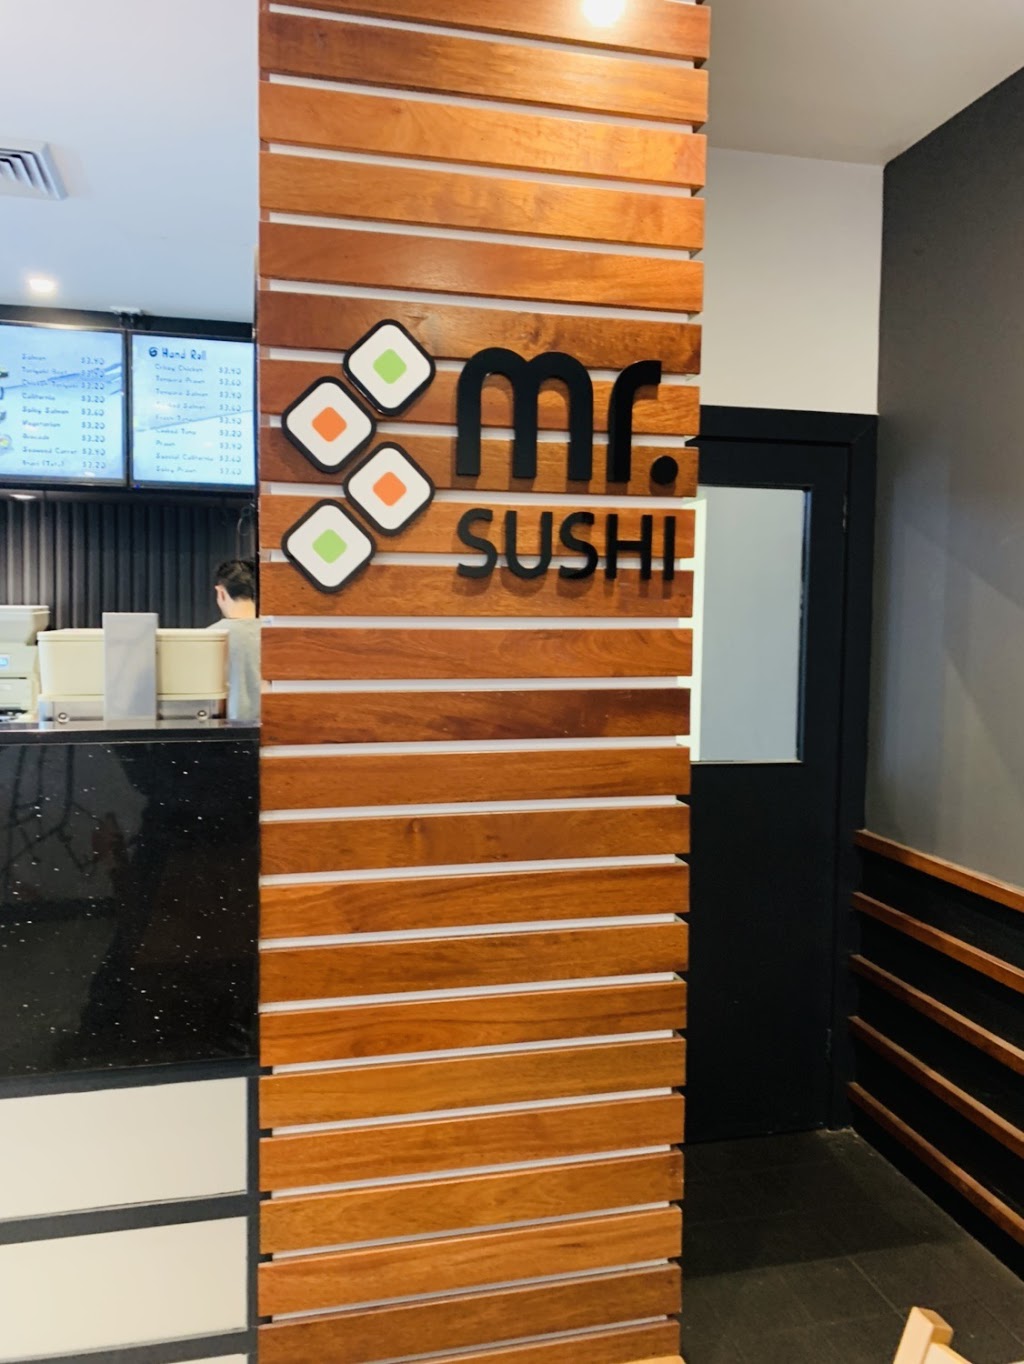 Mr Sushi | restaurant | 26-32 Bowman St, Macquarie ACT 2614, Australia